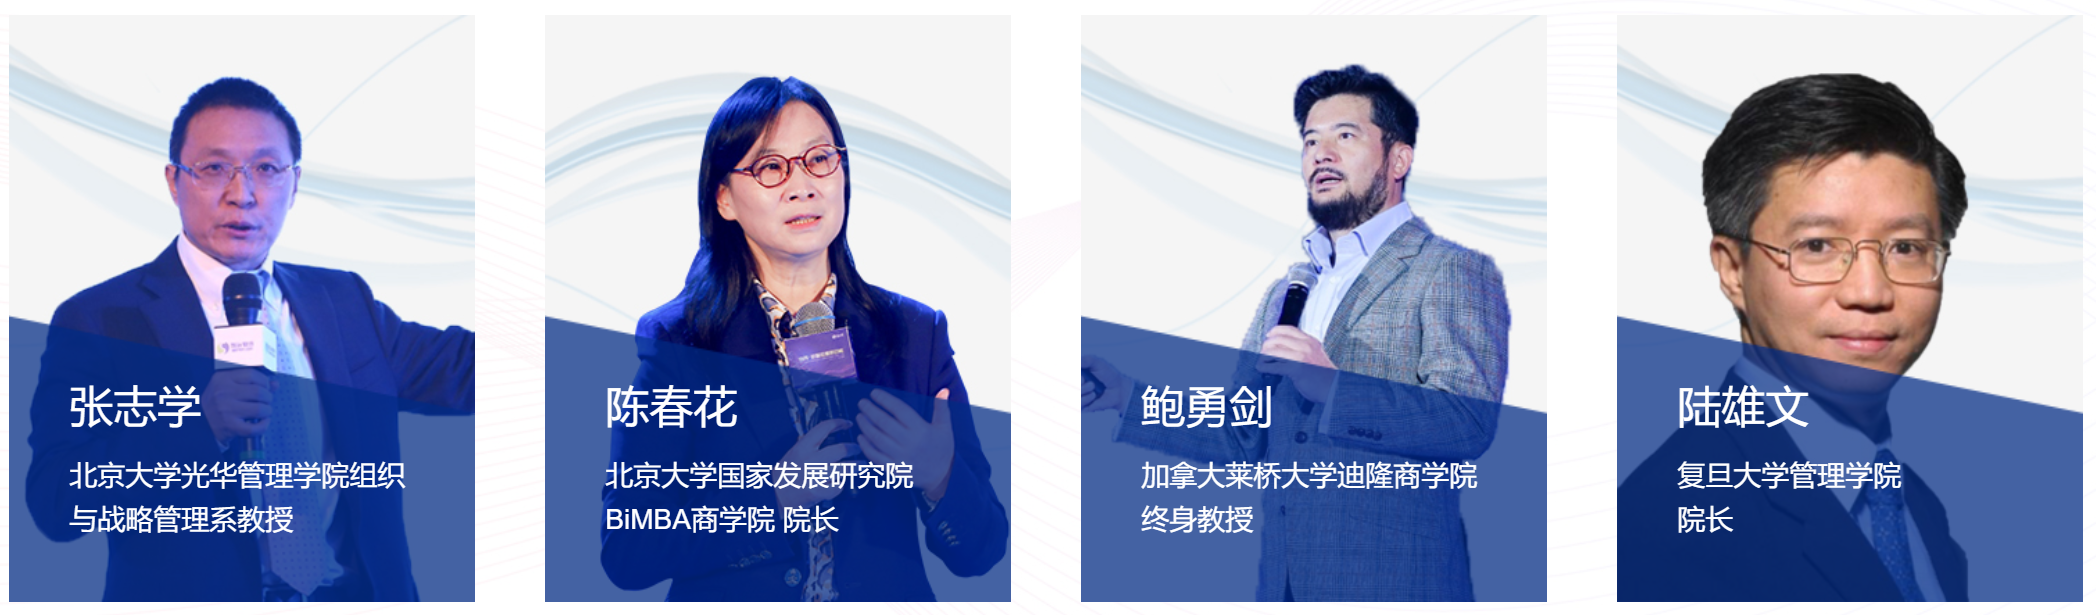 2020中国协同管理高峰论坛暨致远互联第十届用户大会